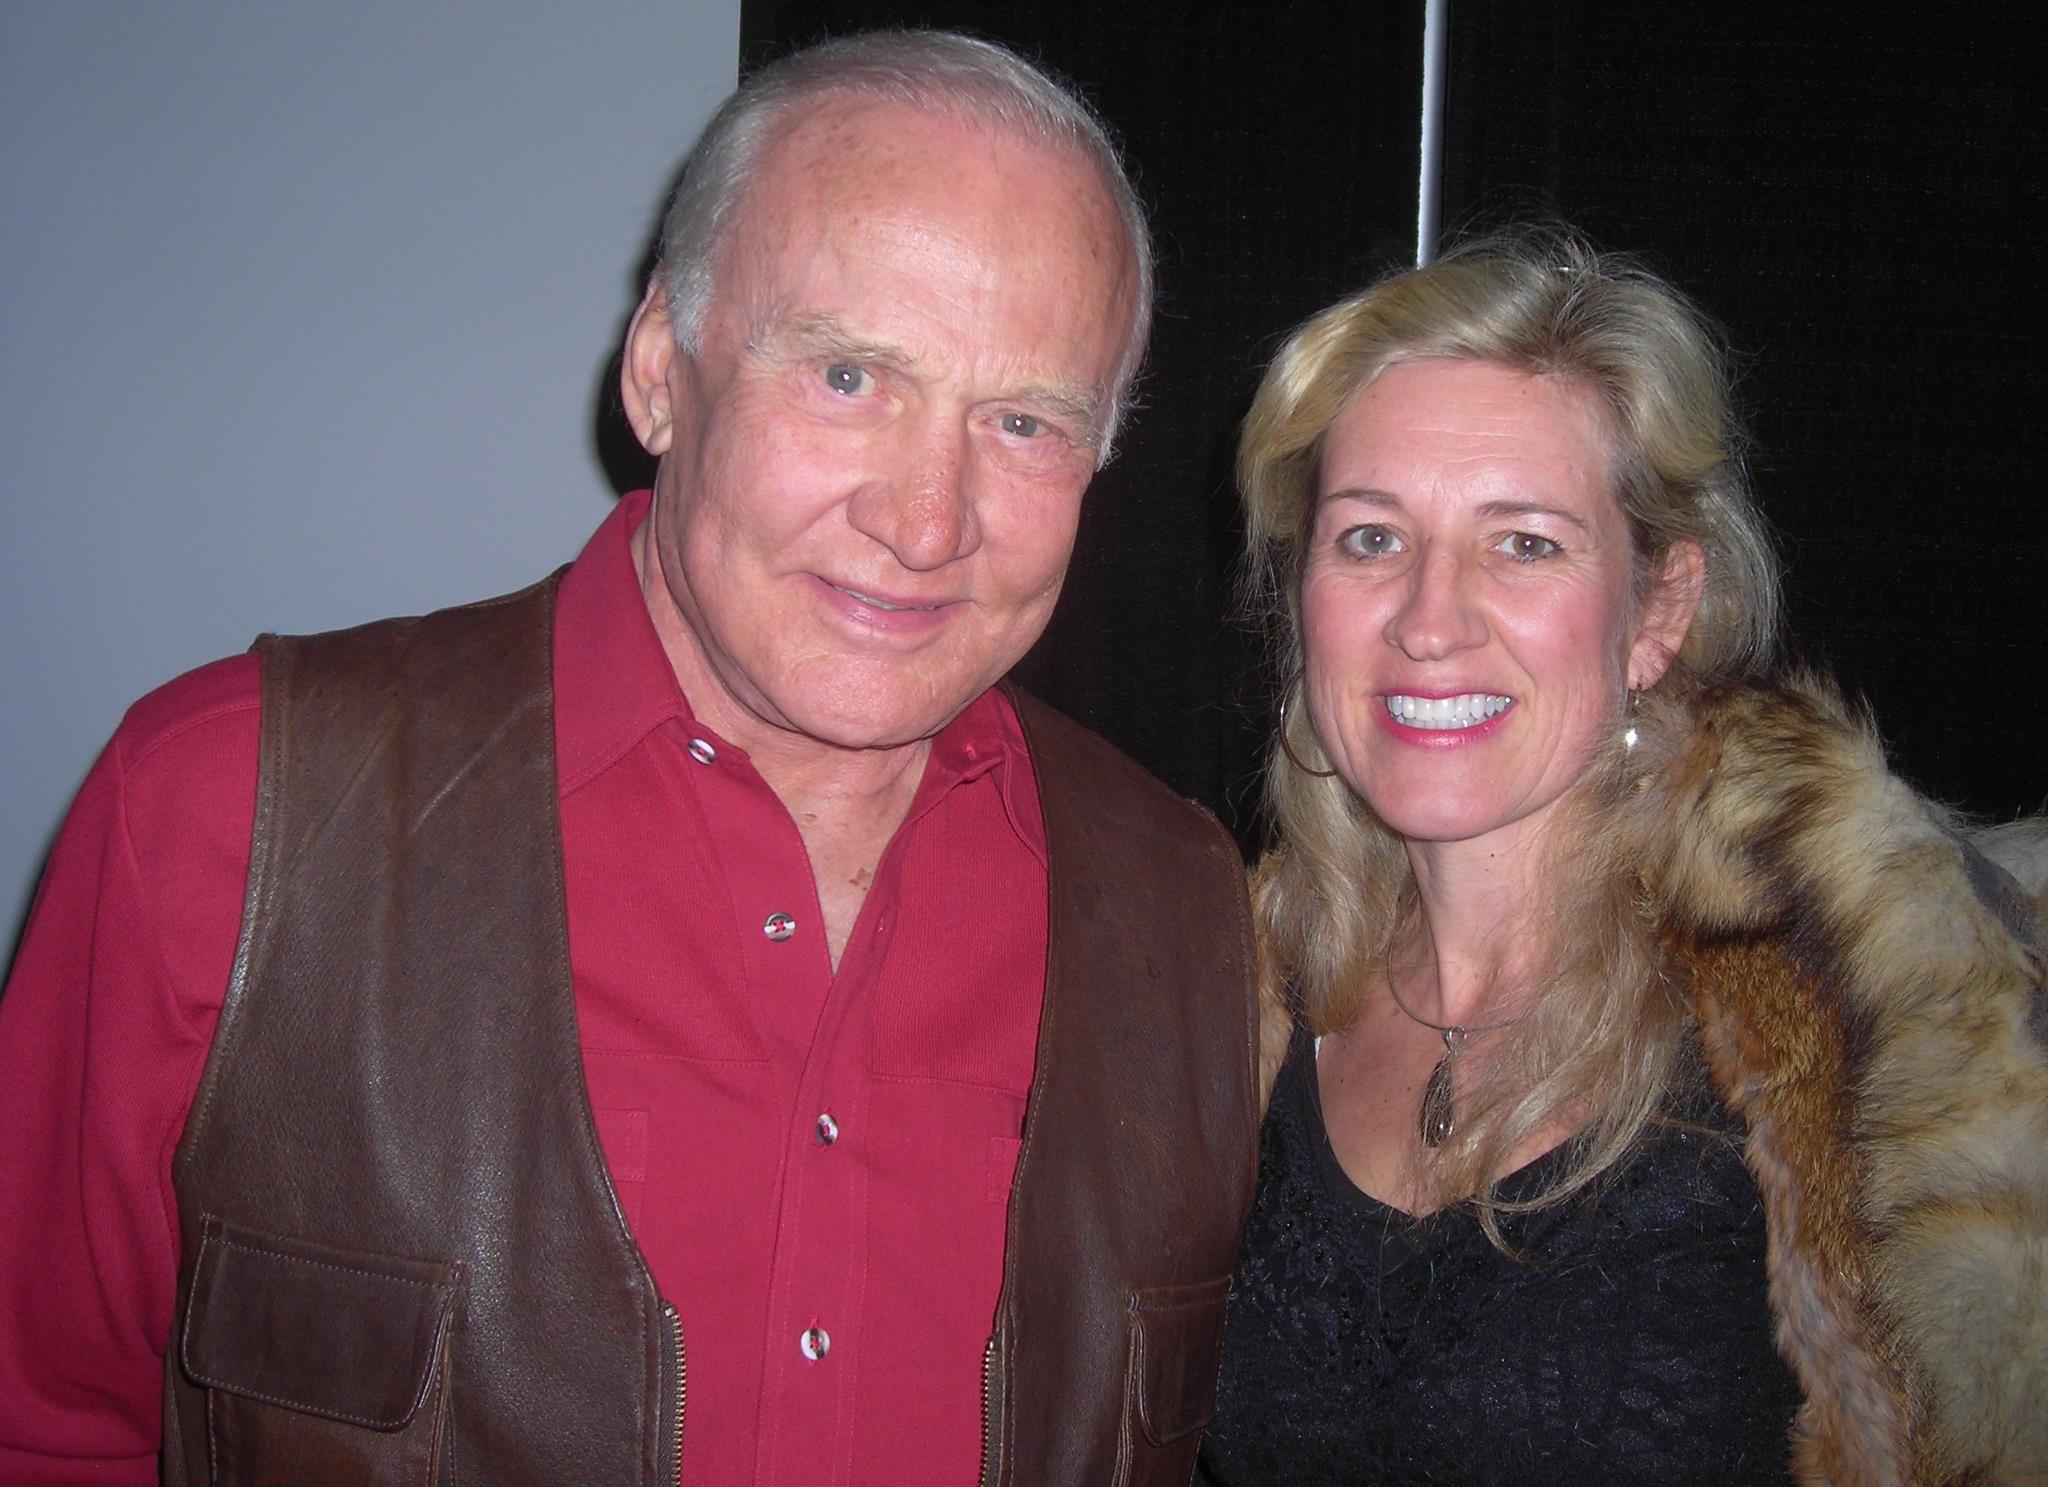 Sundance Film Festival 2012 astronaut Buzz Aldrin